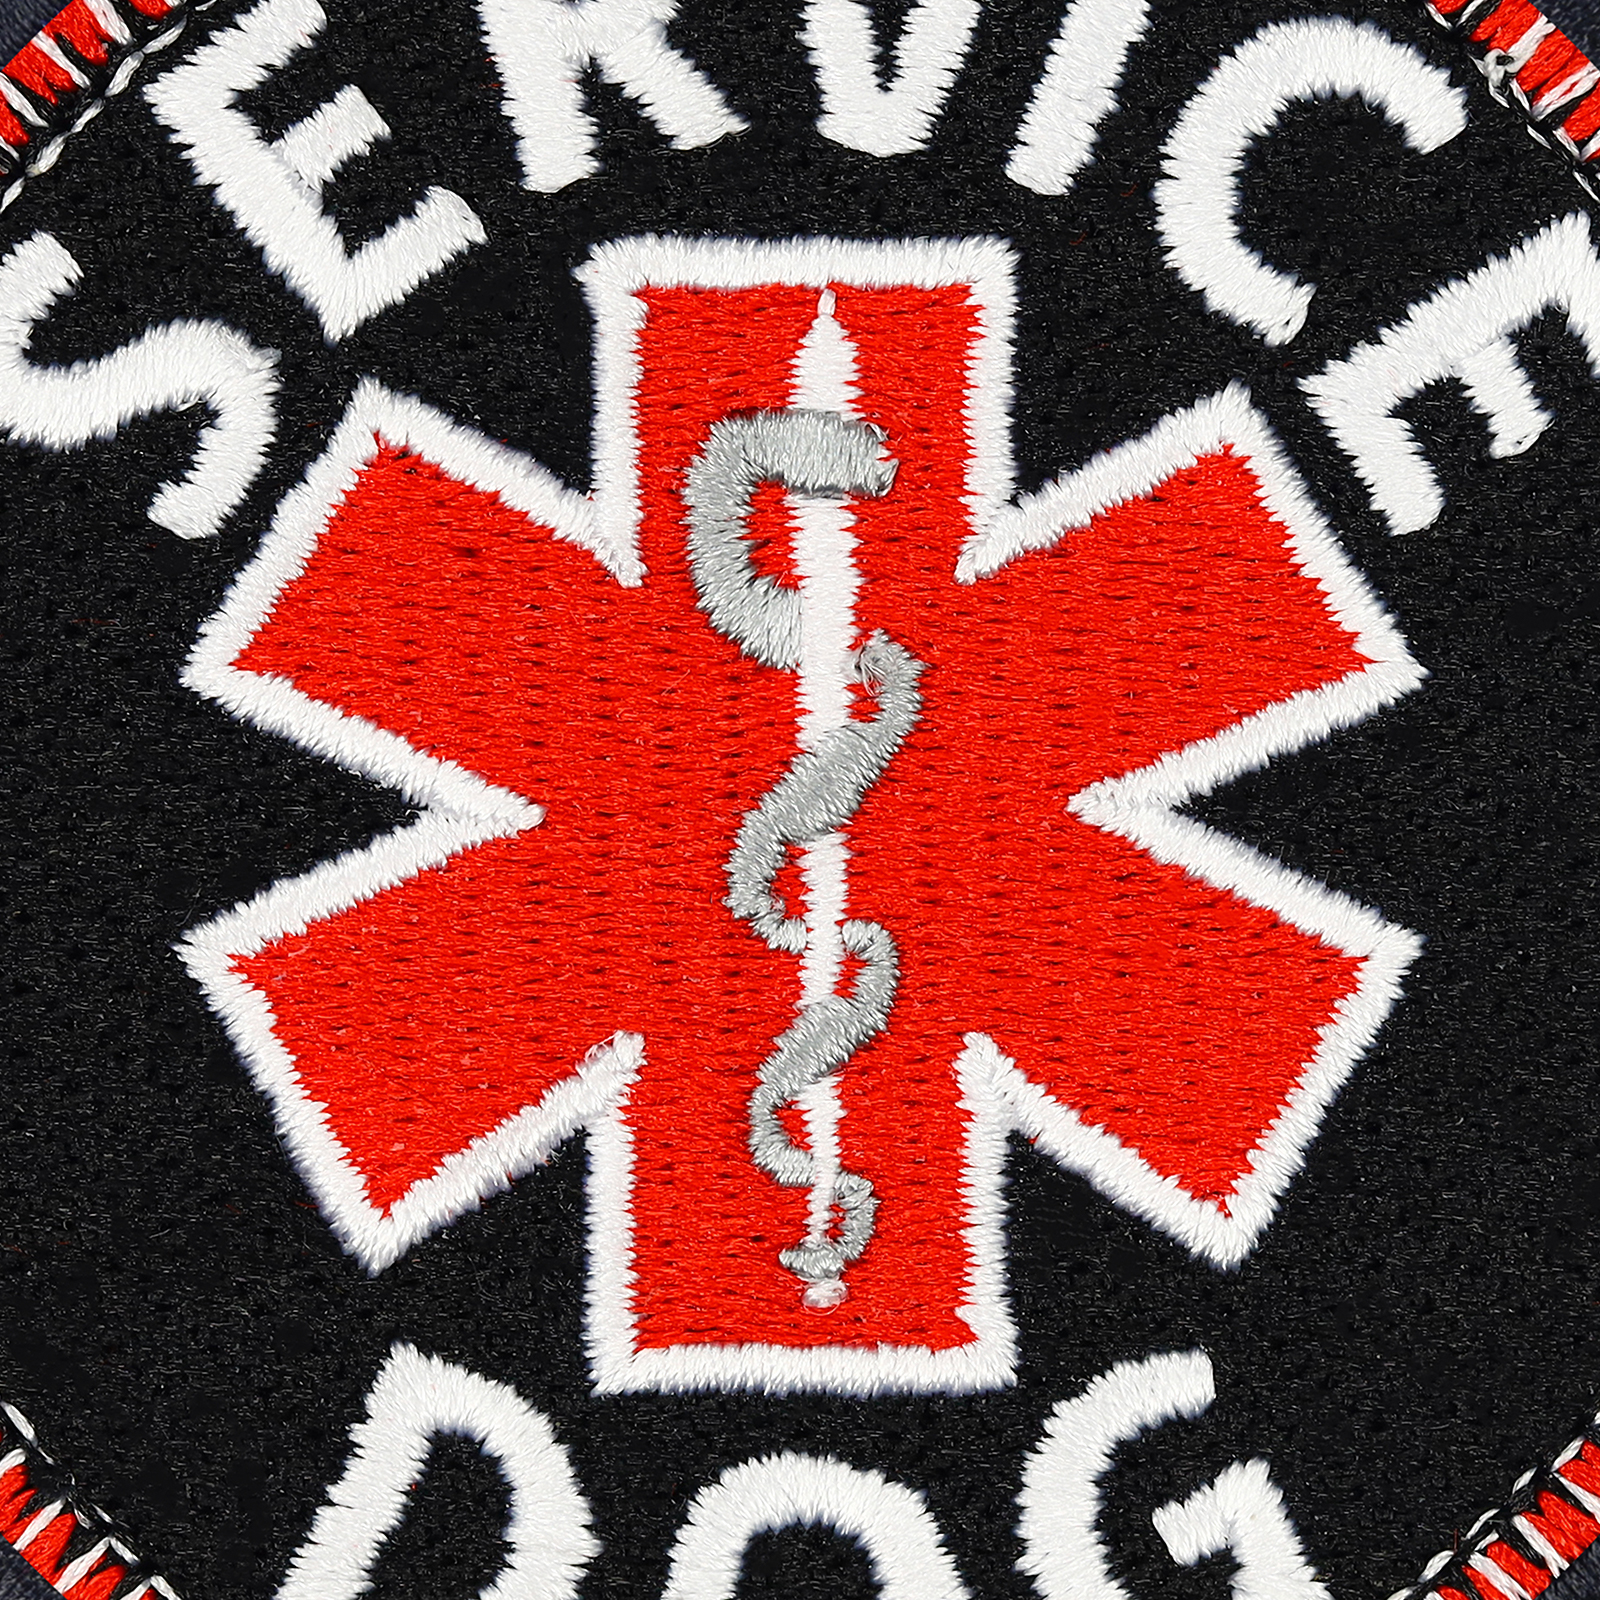 Service dog - Patch